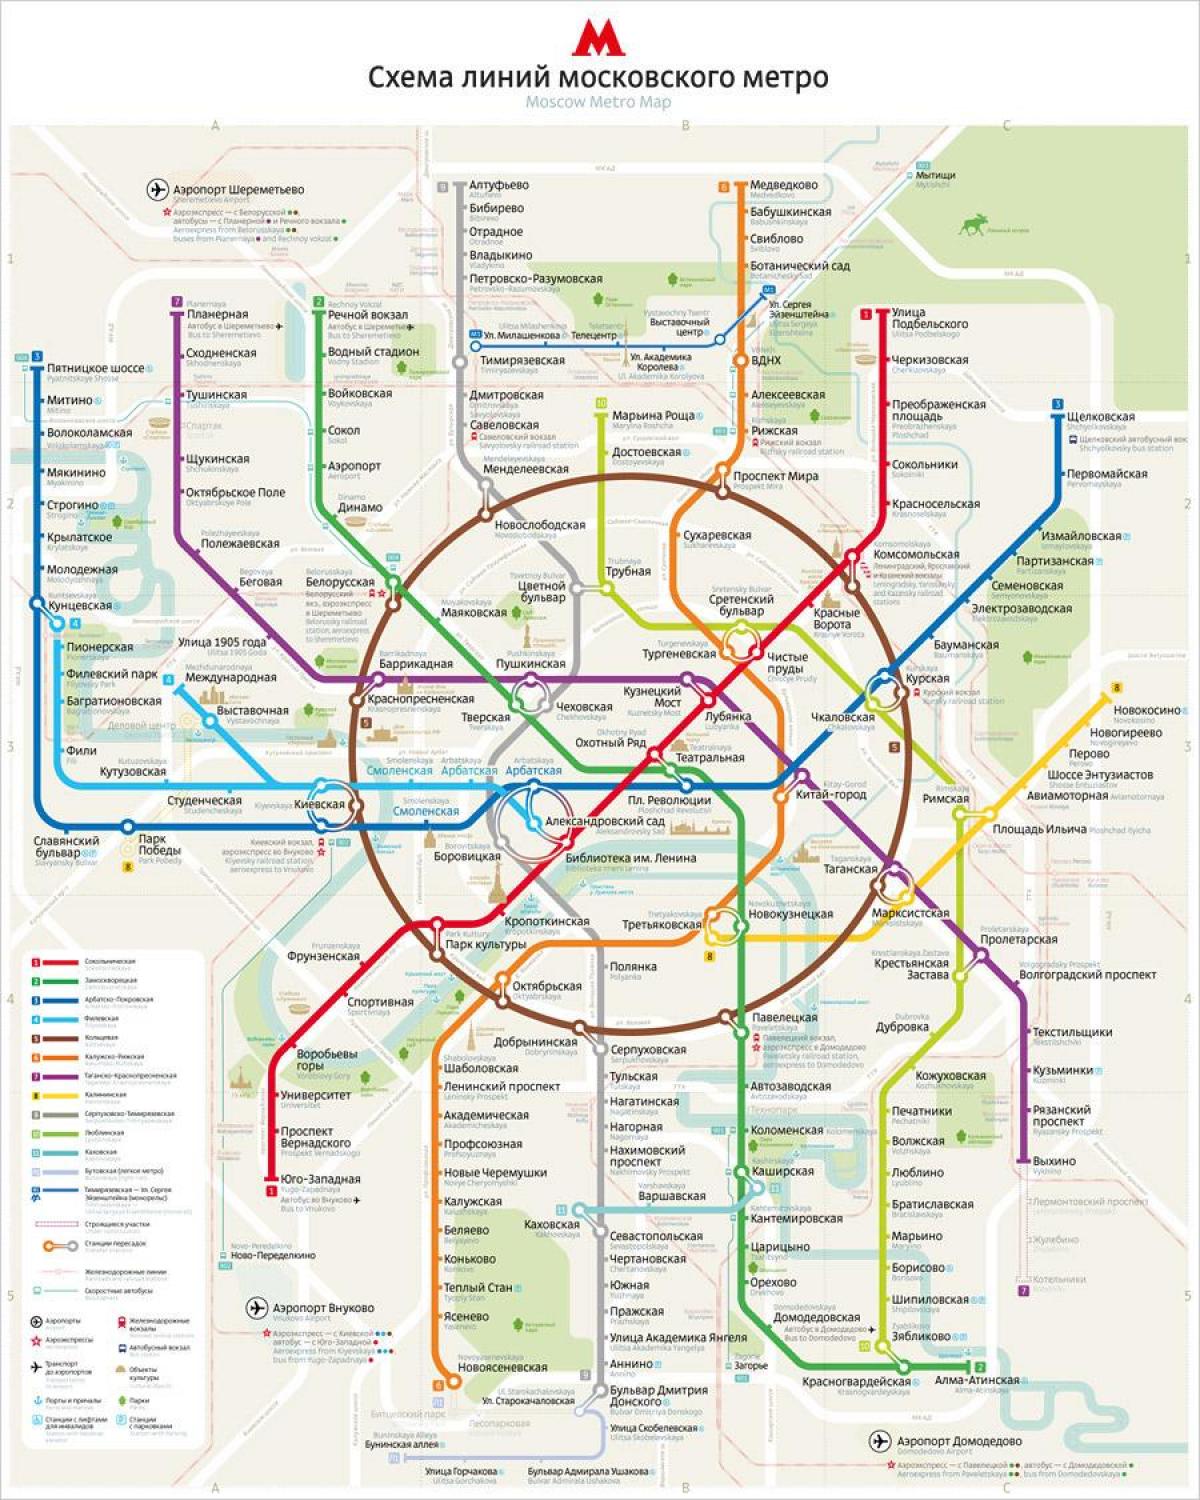 मास्को मेट्रो का नक्शा अंग्रेजी और रूसी